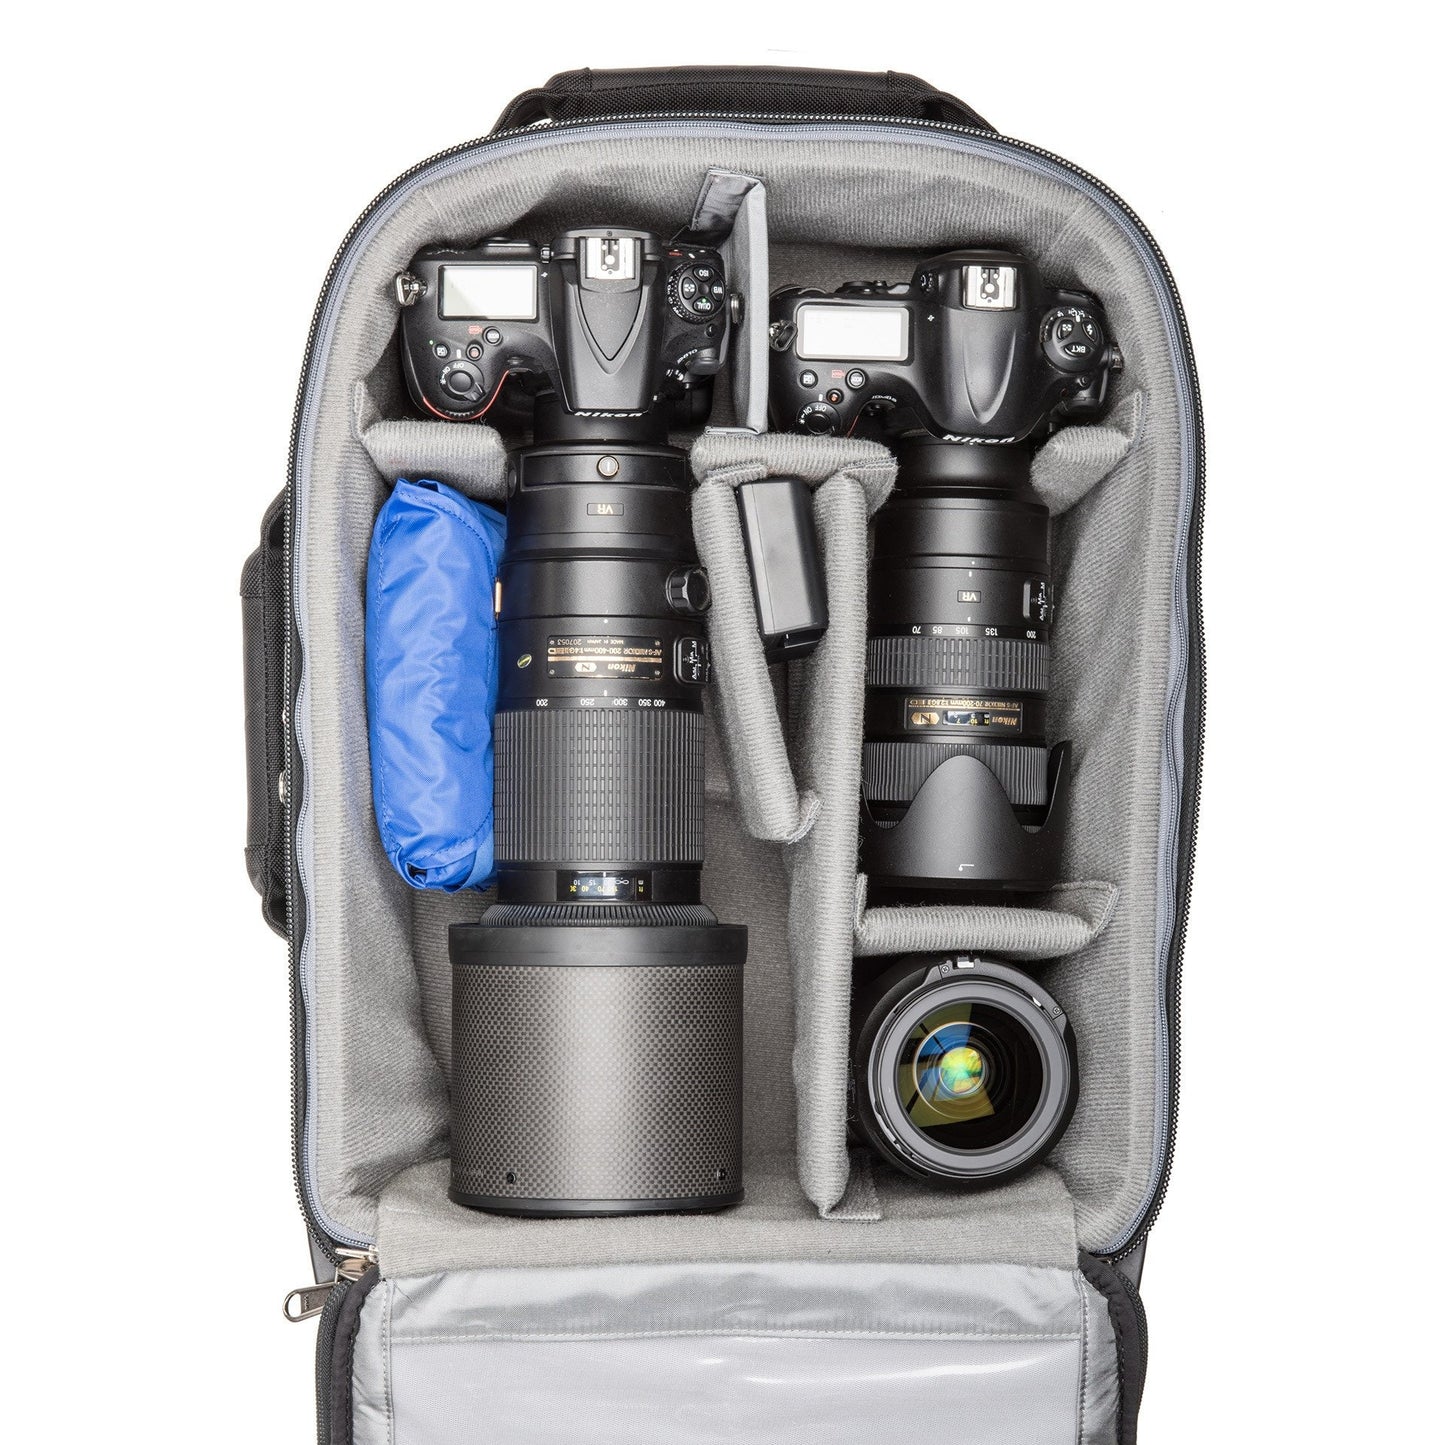 
                  
                    Nikon Gripped DSLR+200-400mm f/4, Gripped DSLR+70-200mm f/2.8, 24-70mm f/2.8
                  
                